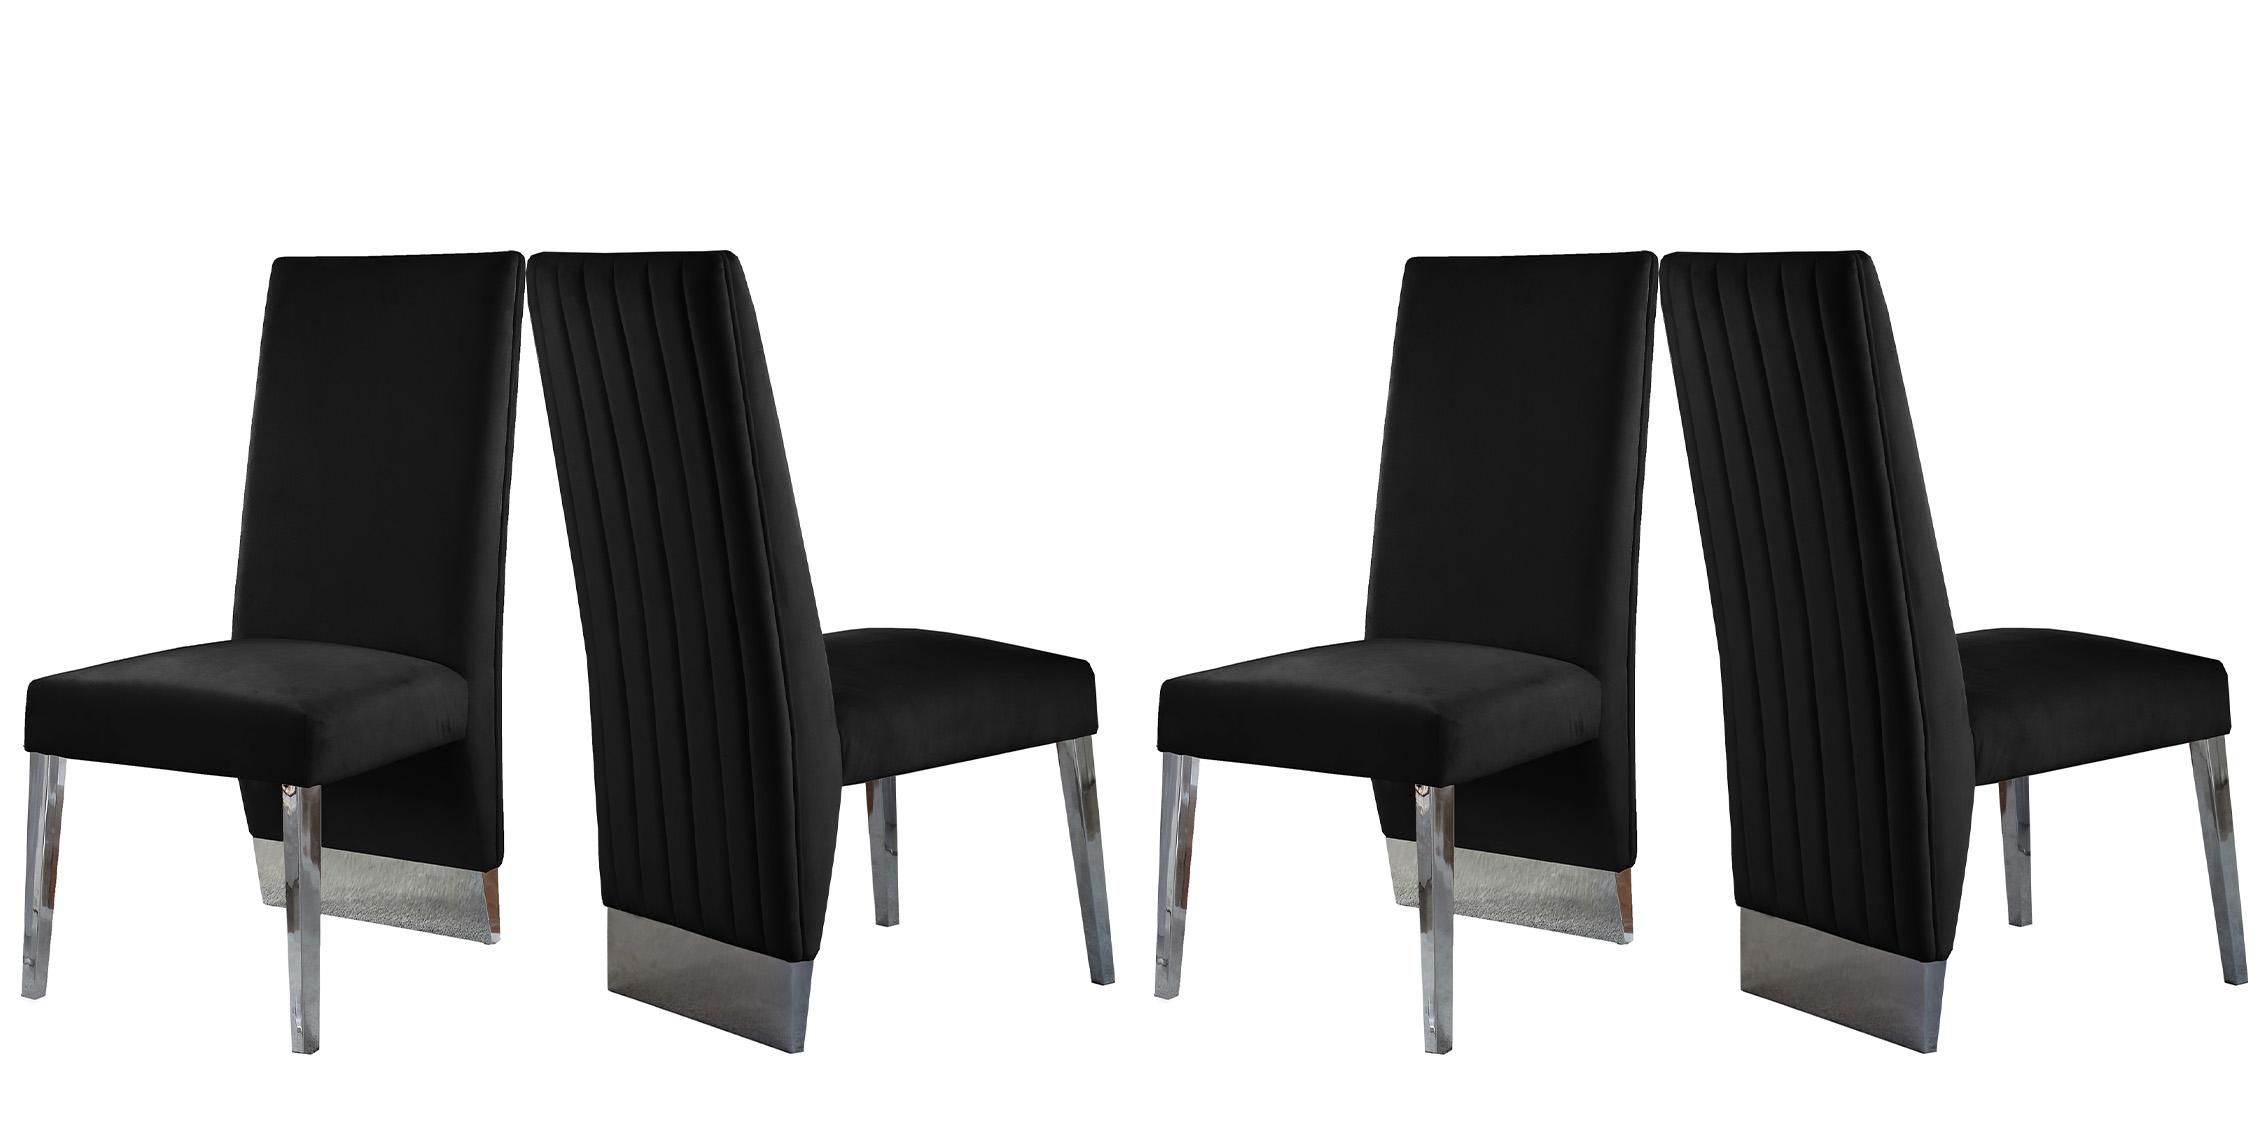 Contemporary, Modern Chair Set PORSHA 756Black-C 756Black-C-Set-4 in Chrome, Black Velvet